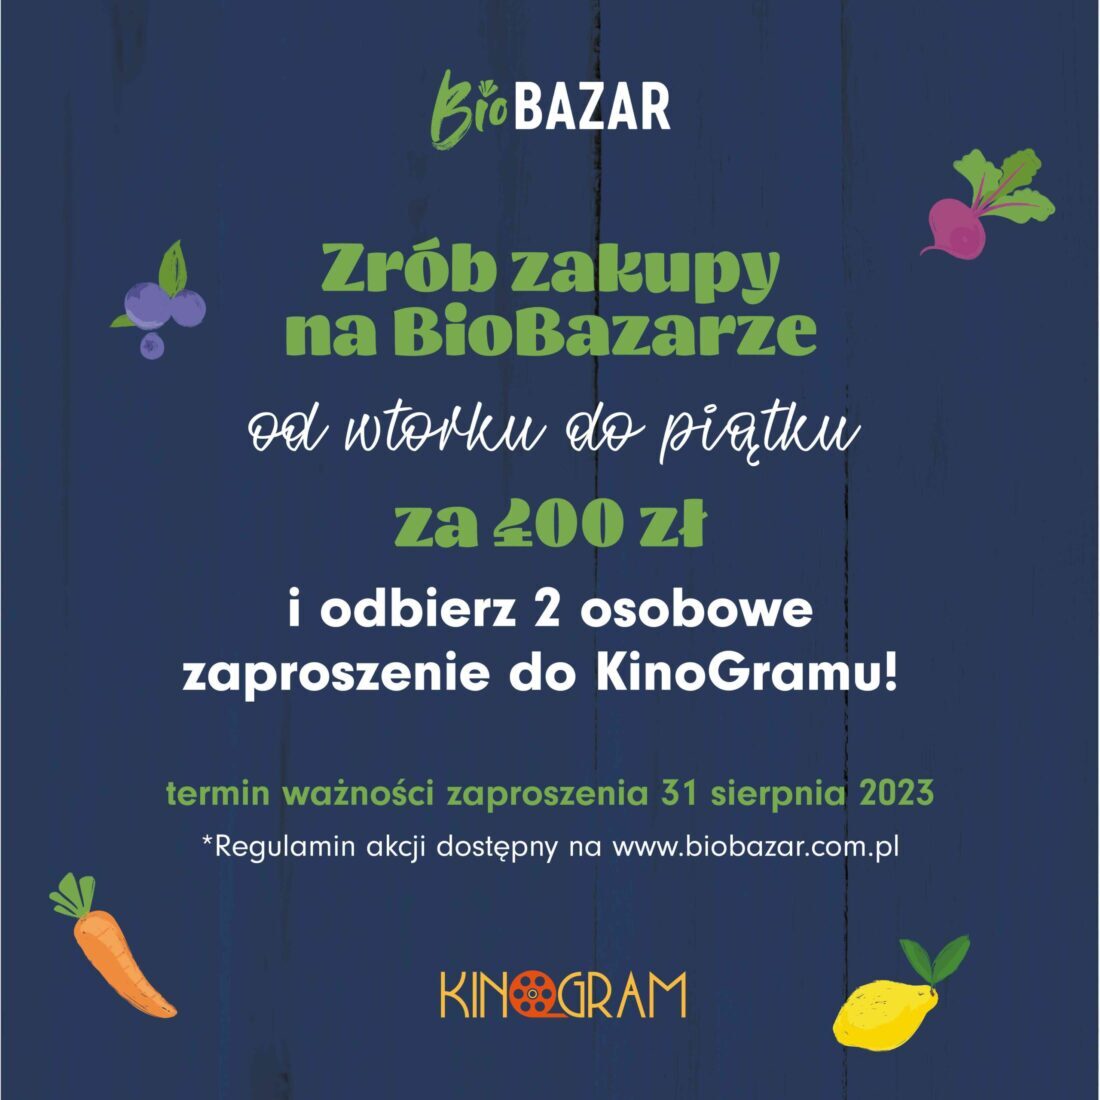 BioBazar z KinoGramem – rusza wakacyjna akcja